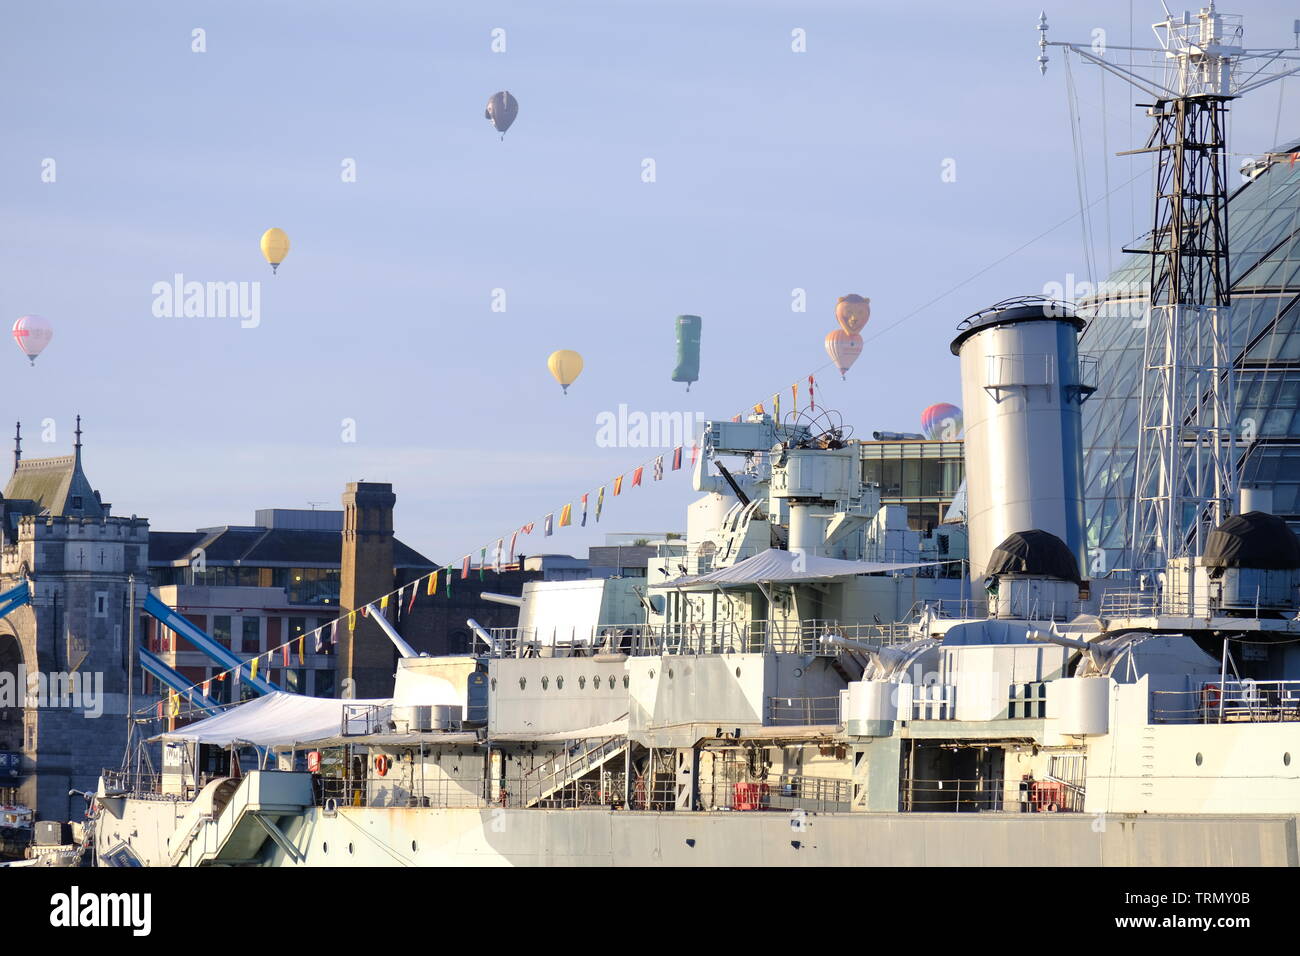 Die floatilla von der RICOH Oberbürgermeister von London's Hot Air Balloon Regatta 2019 führt über HMS Belfast und der Tower Bridge Während am frühen Morgen. Stockfoto